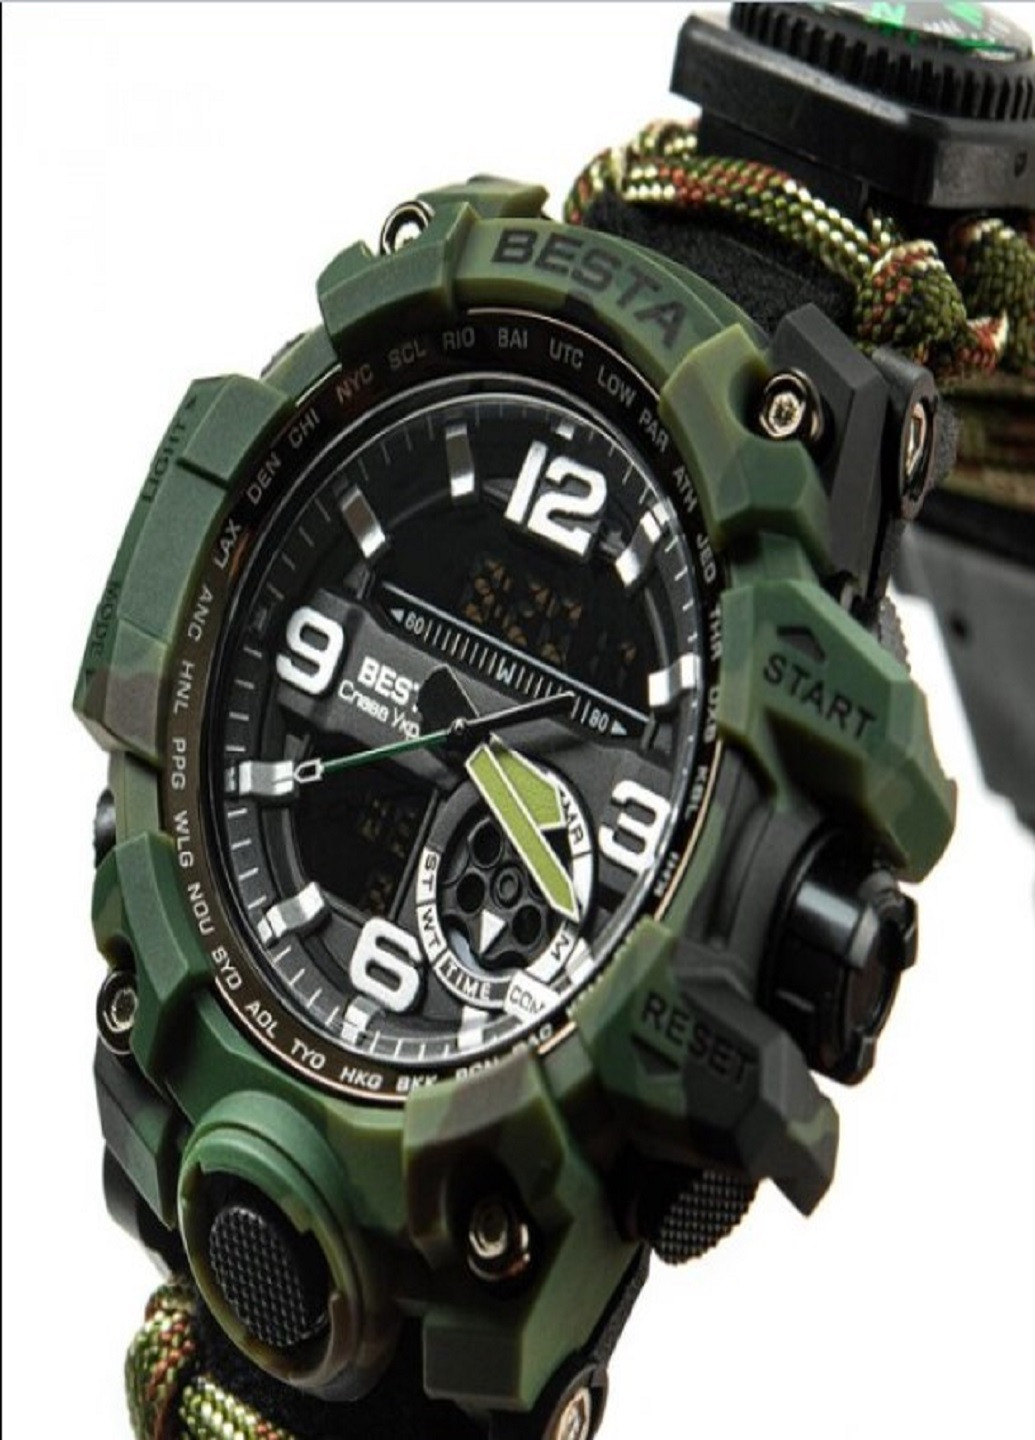 Чоловічий наручний годинник Military з компасом для виживання 7 в 1 мілітарі Besta (258721940)